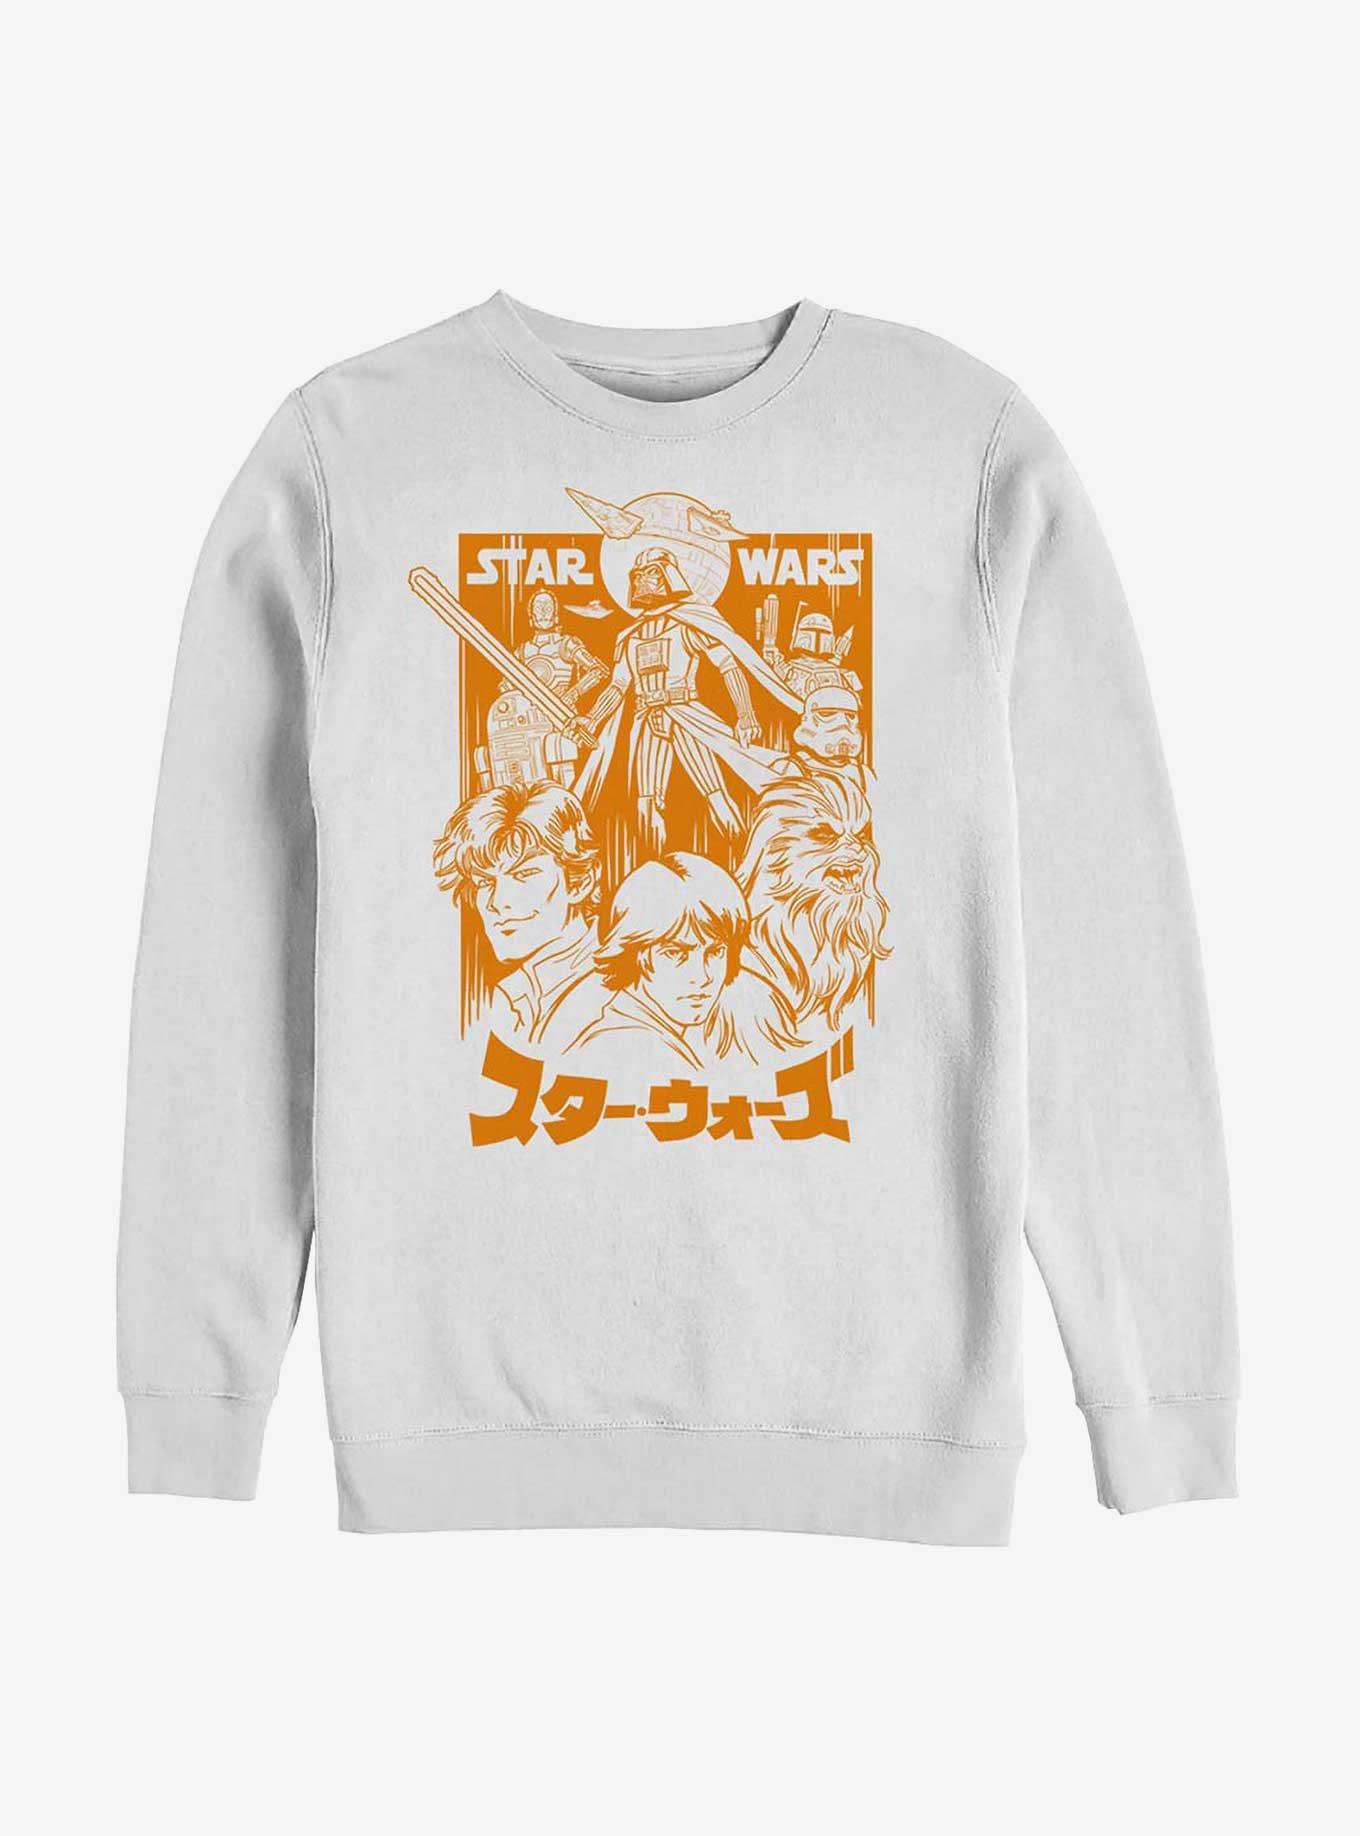 Star Wars Manga Star Wars Orange Sweatshirt, WHITE, hi-res